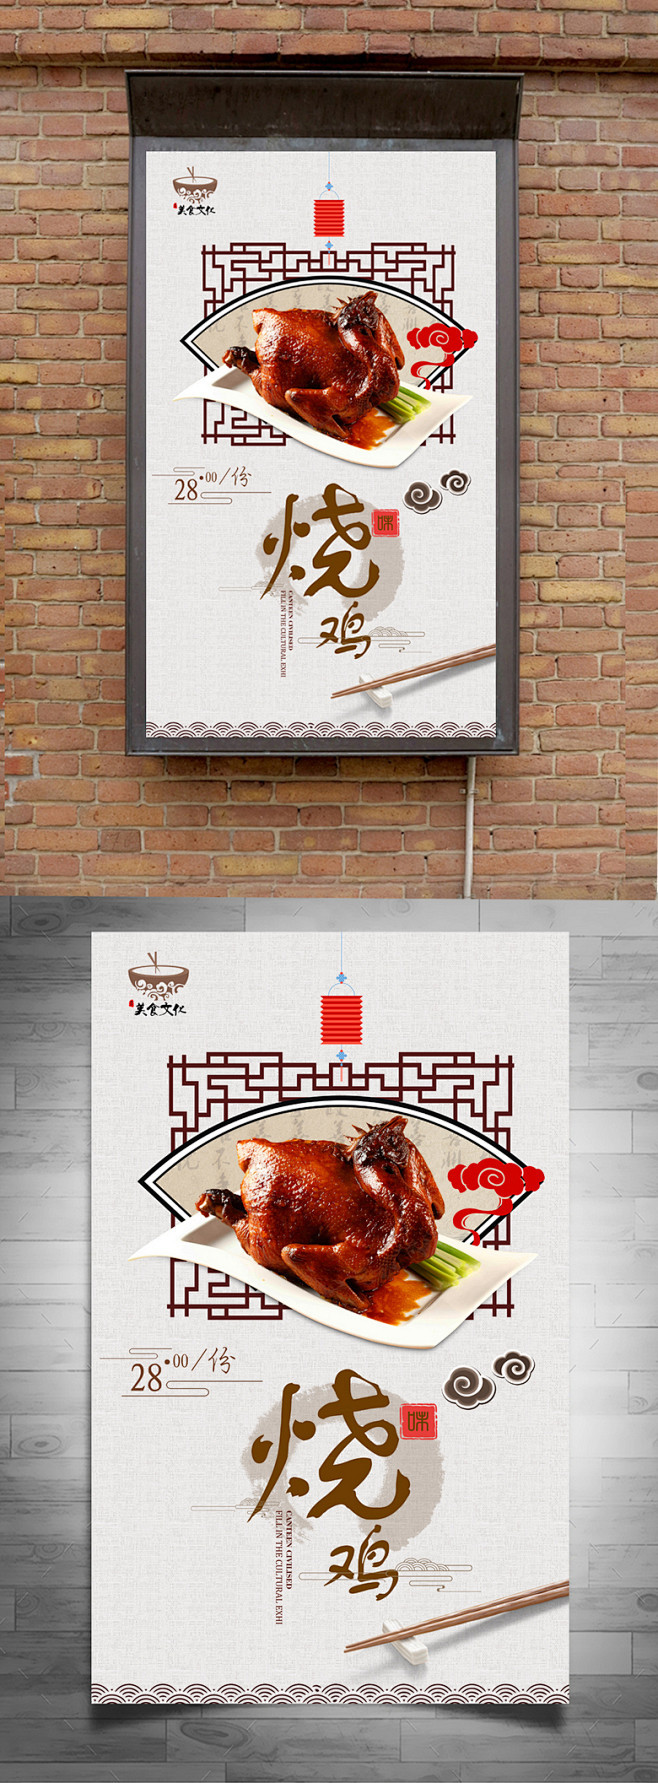 高档中国风烧鸡宣传海报设计 烧鸡海报 烧...